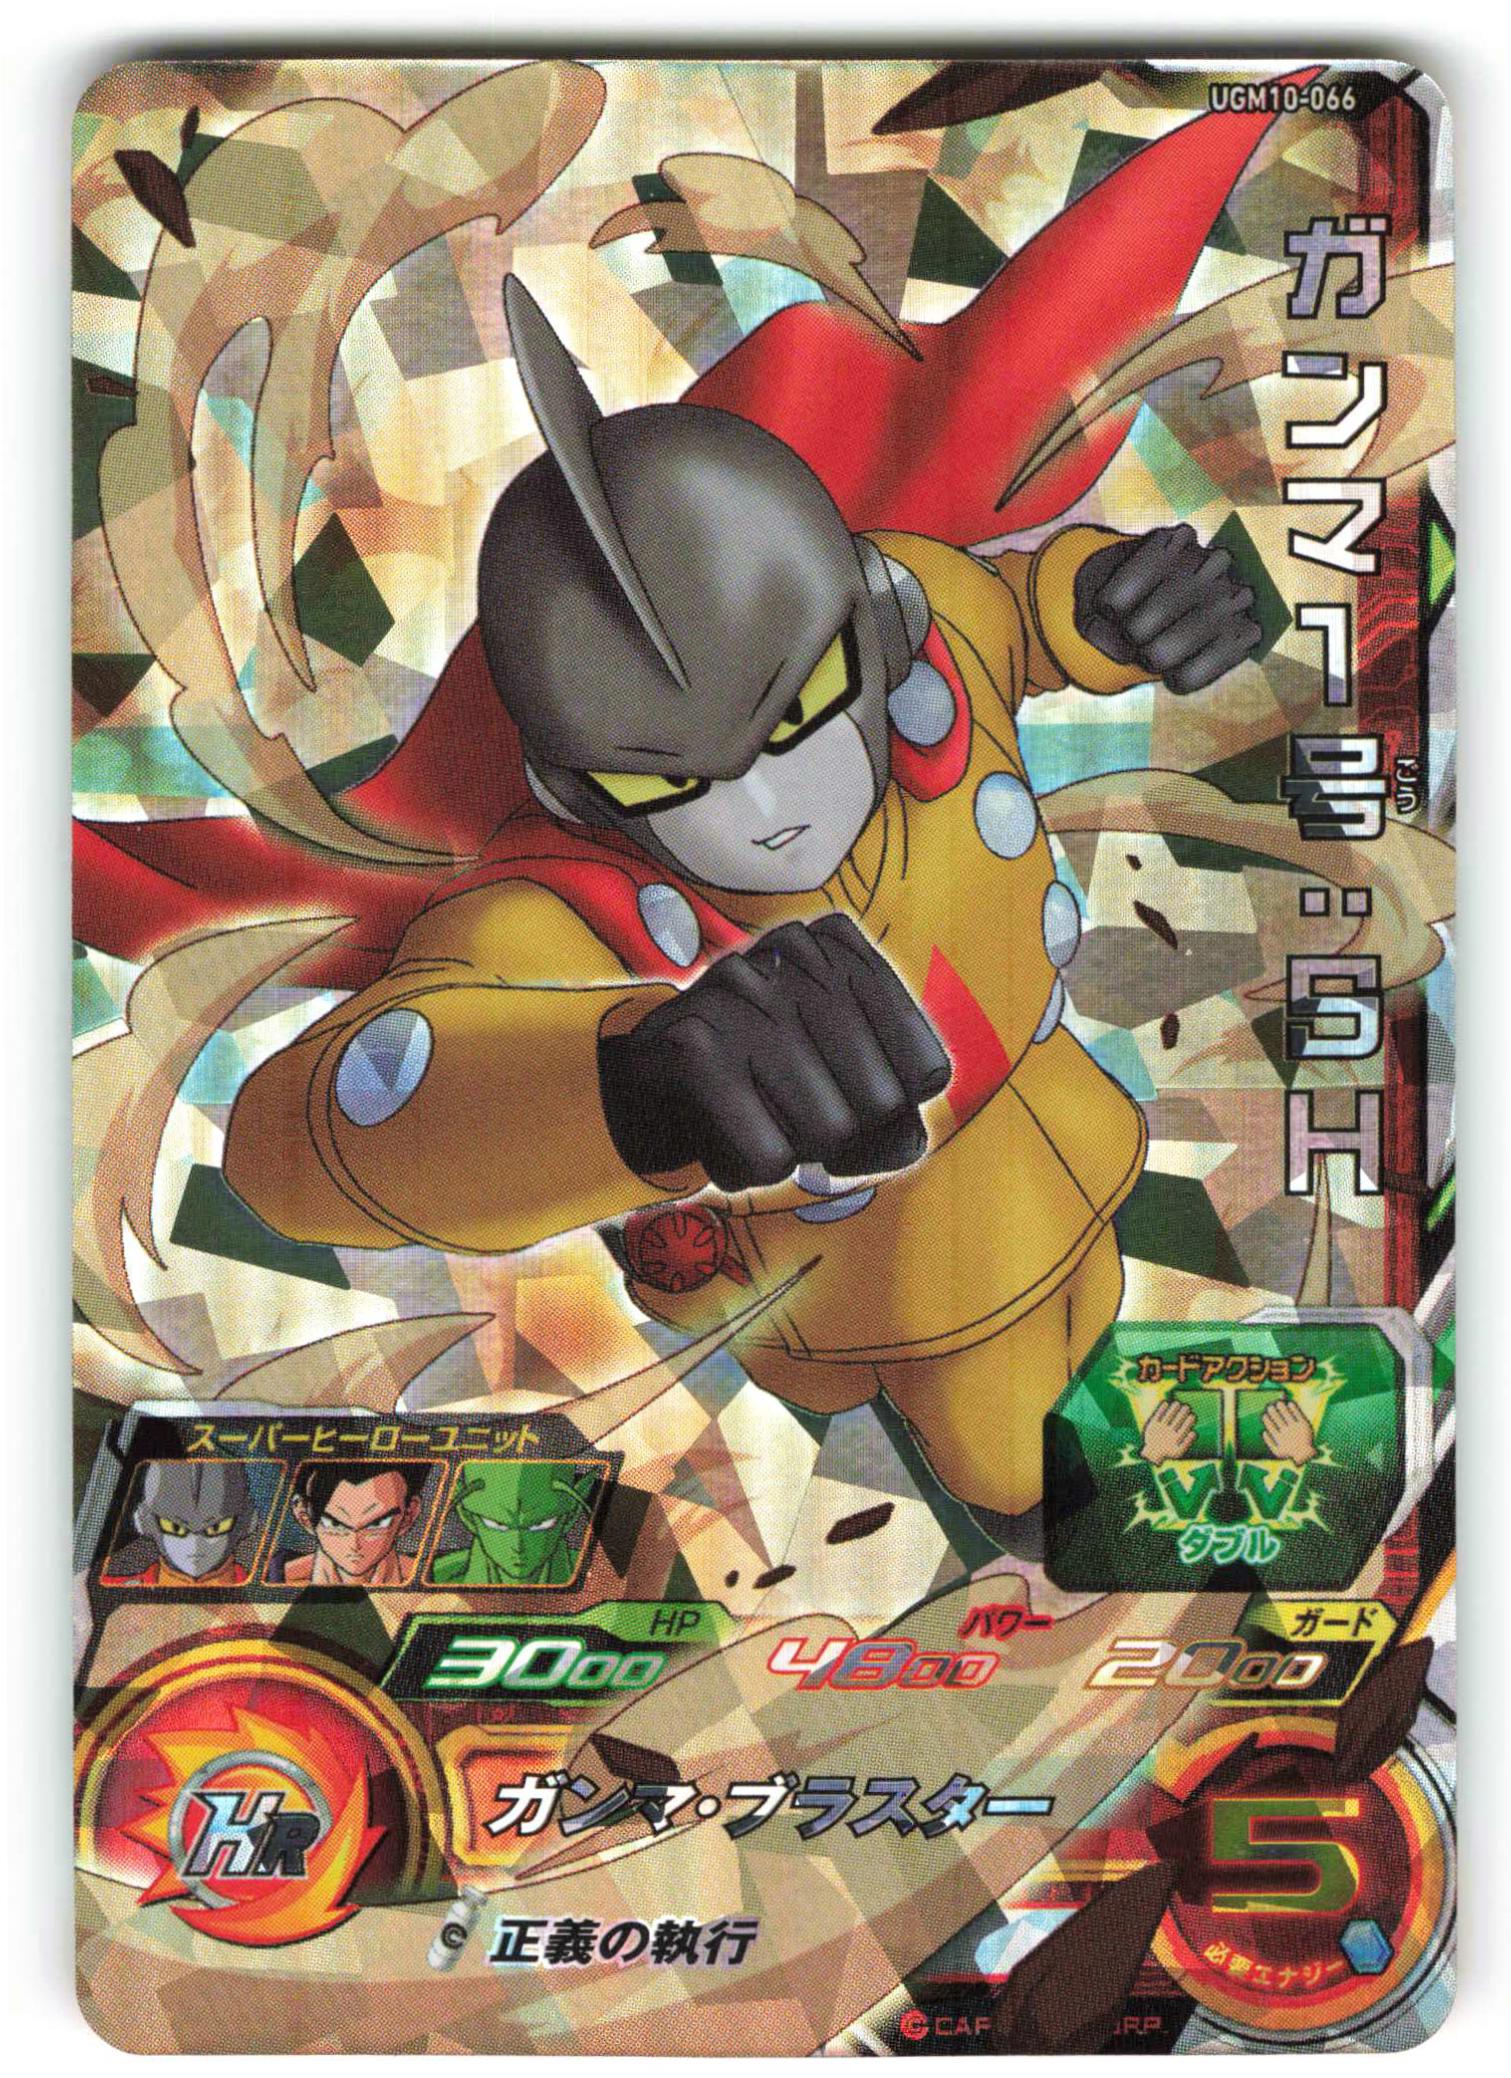 スーパードラゴンボールヒーローズ UGM10-066 ガンマ1号:SH ②